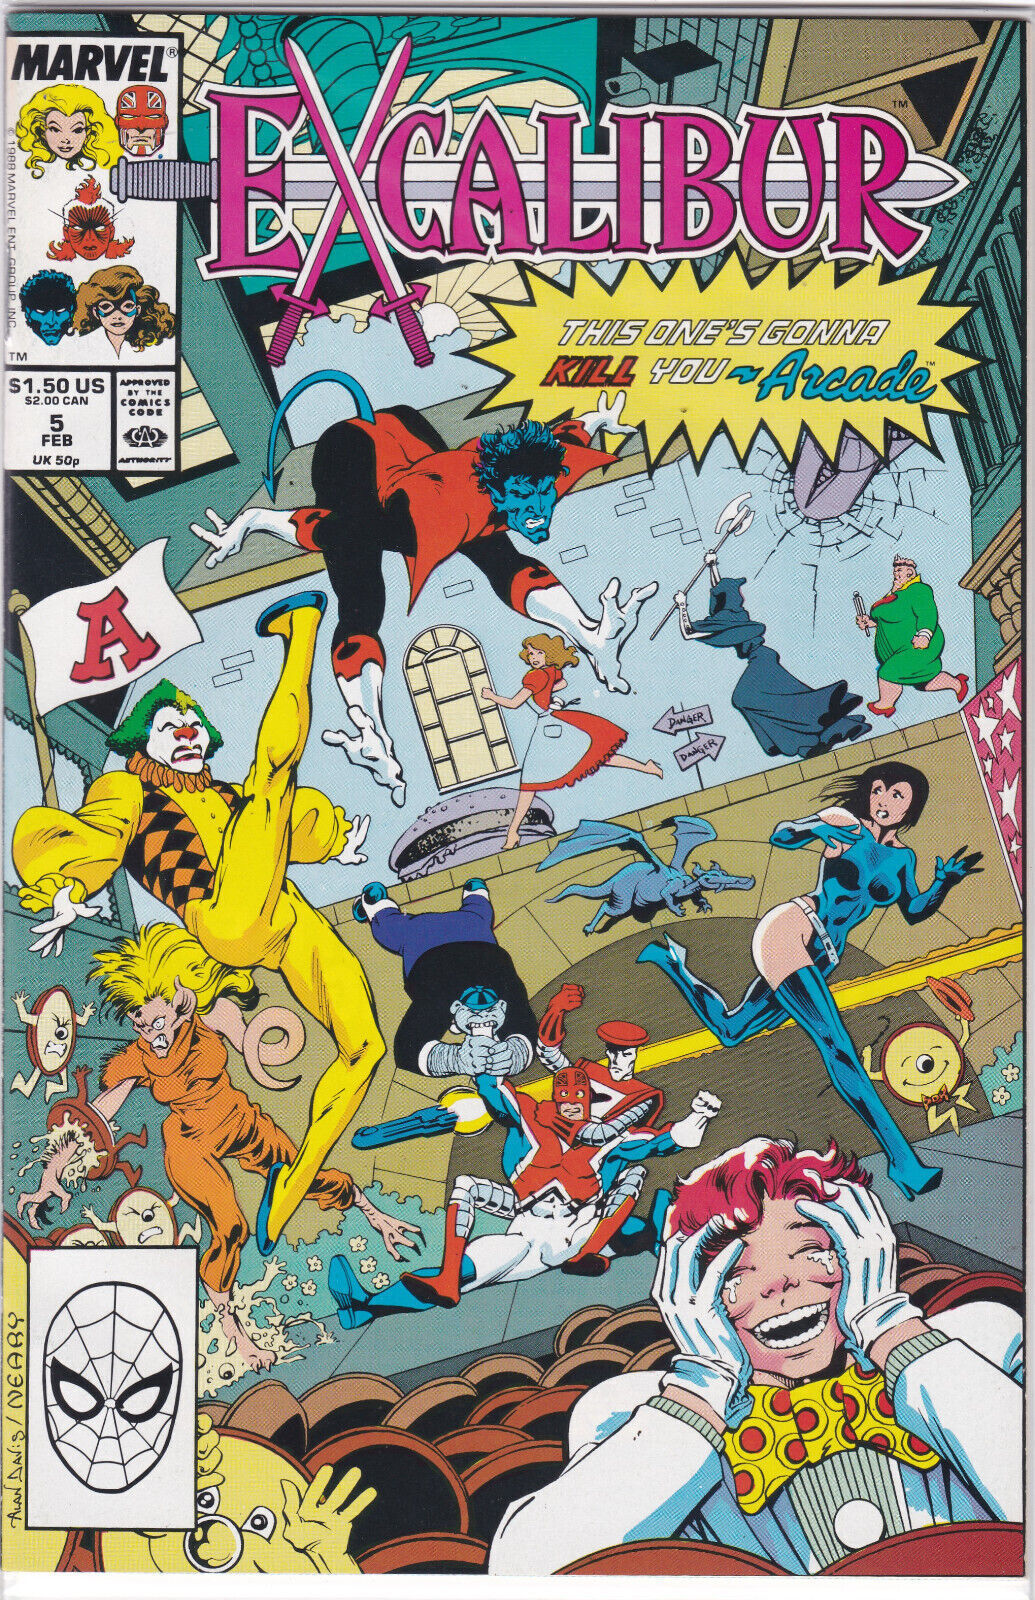 Excalibur #5, Vol. 1 (1988-1998) Marvel Comics, High Grade